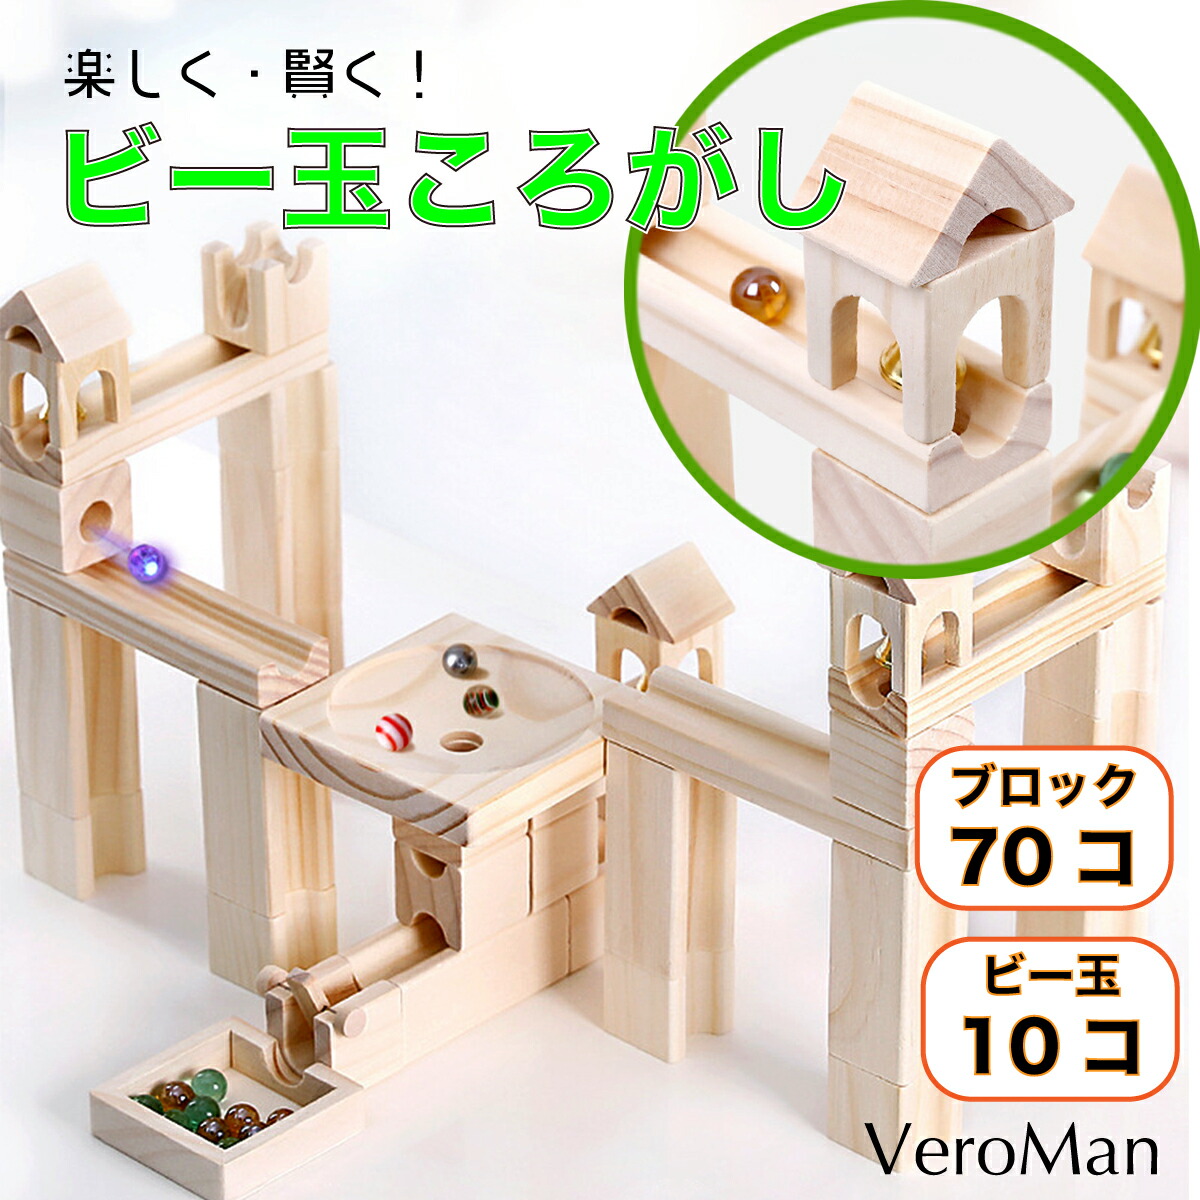 楽天市場 ビー玉転がし おもちゃ 積み木 木製 ブロック 知育玩具 パズル 室内遊具 Veroman Veroman